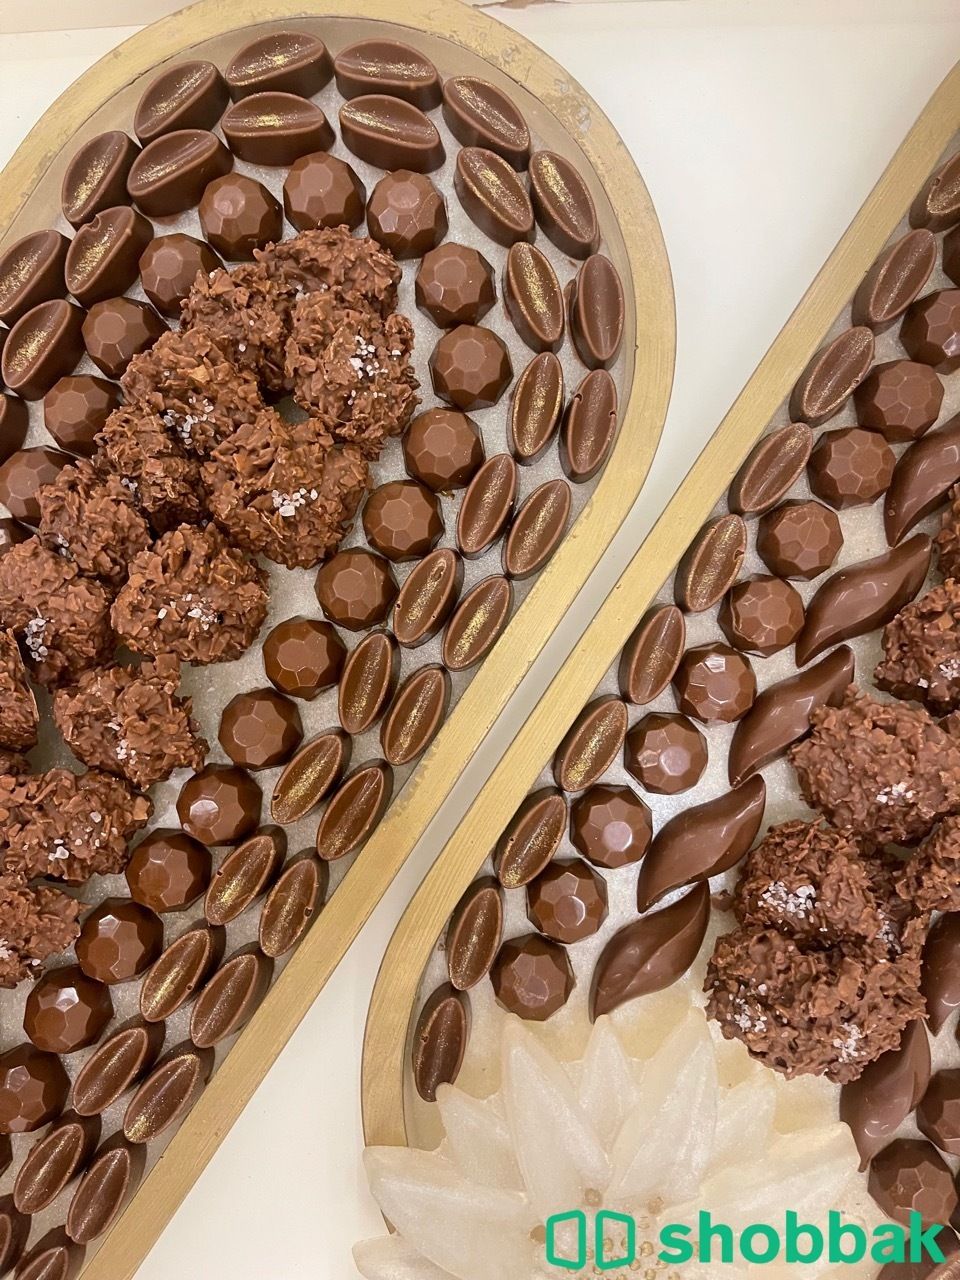 شوكولاتة بلجيكية Shobbak Saudi Arabia